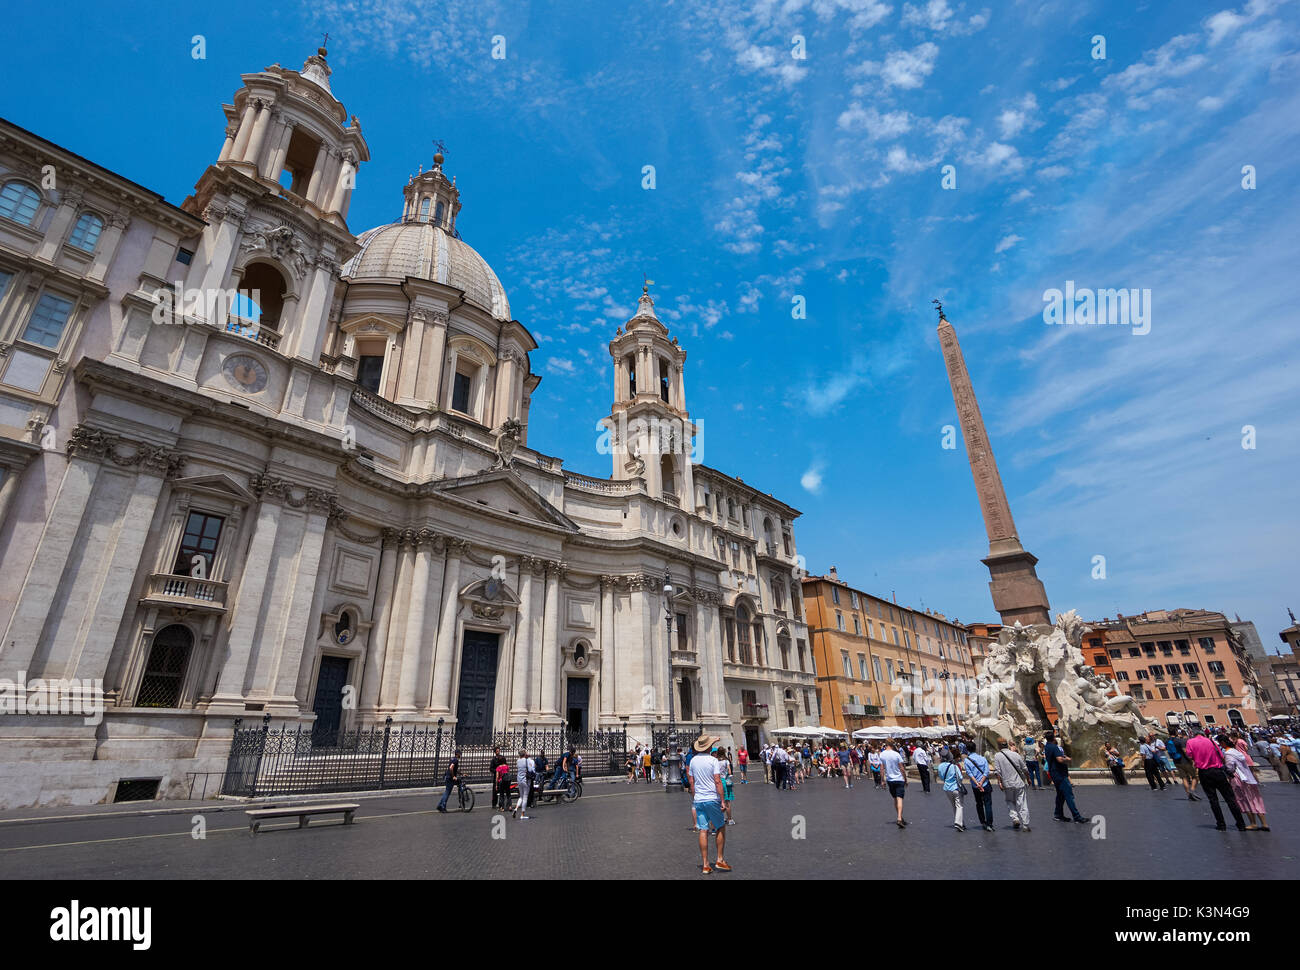 Die Kirche Sant'Agnese in Agone in der Piazza Navona, Rom, Italien Stockfoto